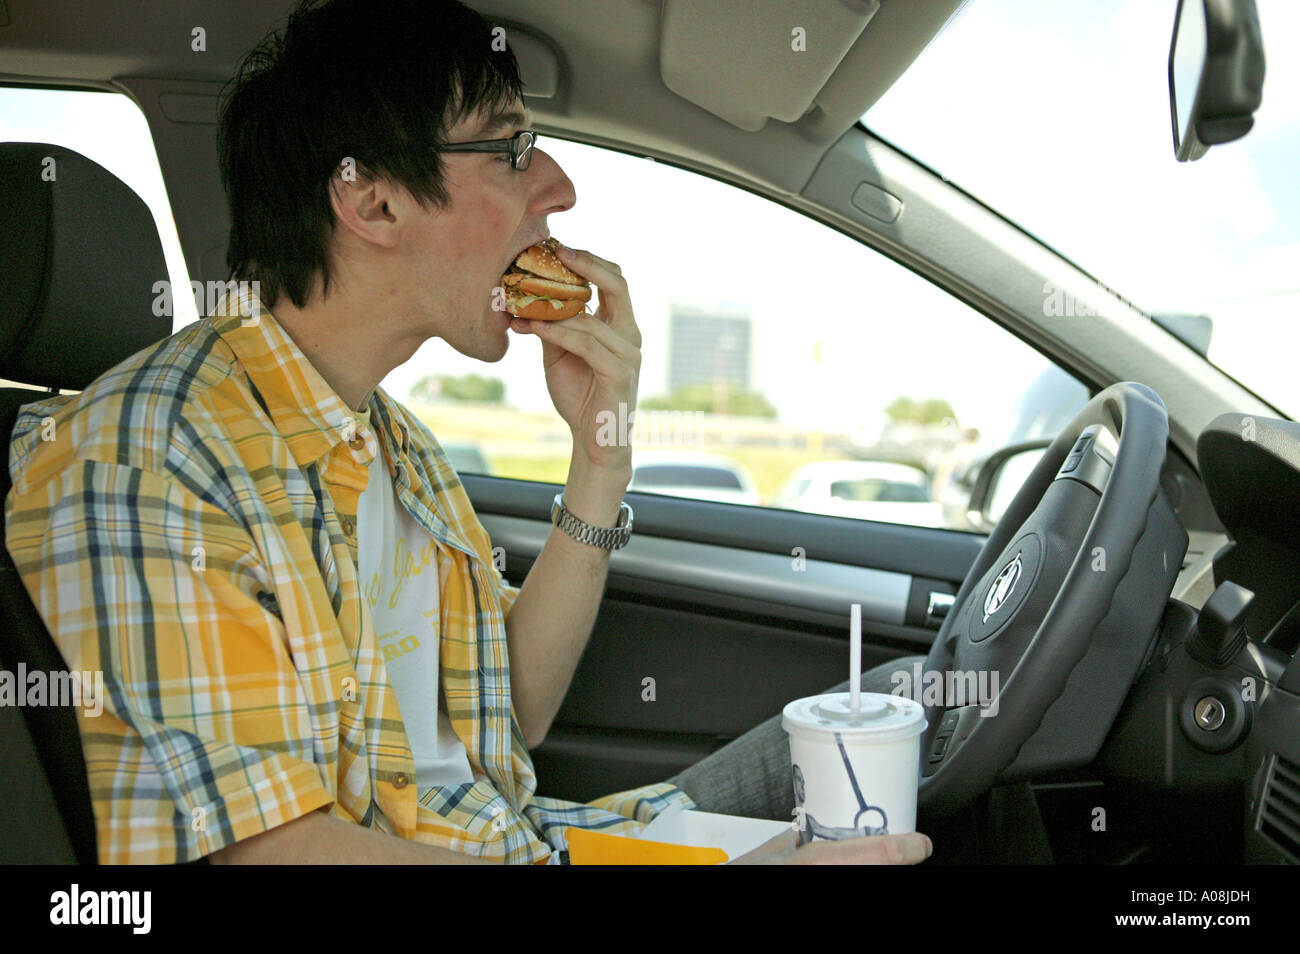 Junger Mann isst einen Hamburger im Auto, Man having a snack in car Stock Photo